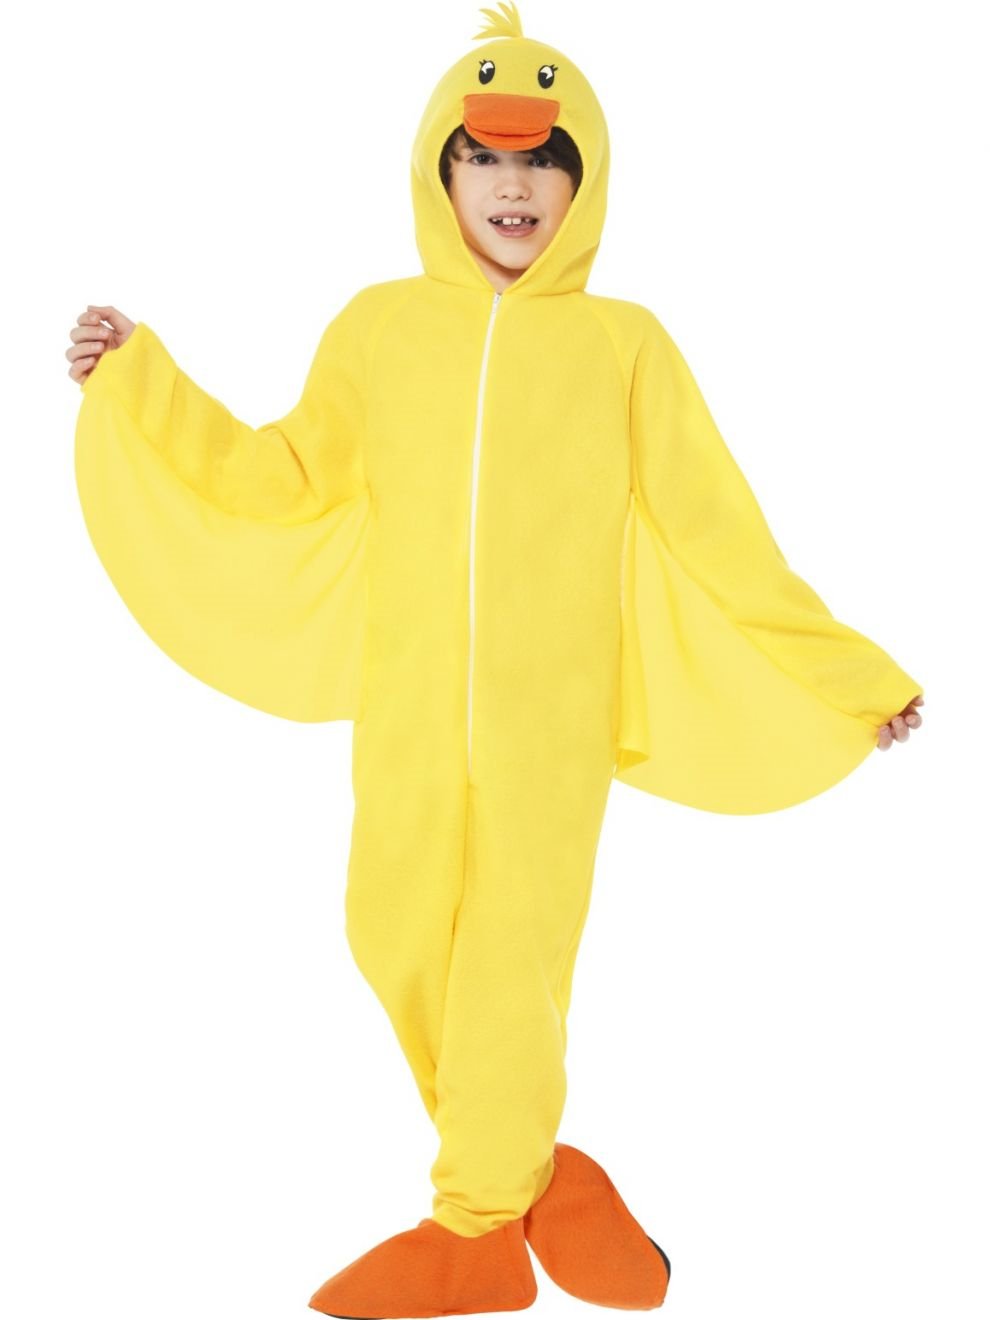 Costume Child Yellow Duck Onsie Medium